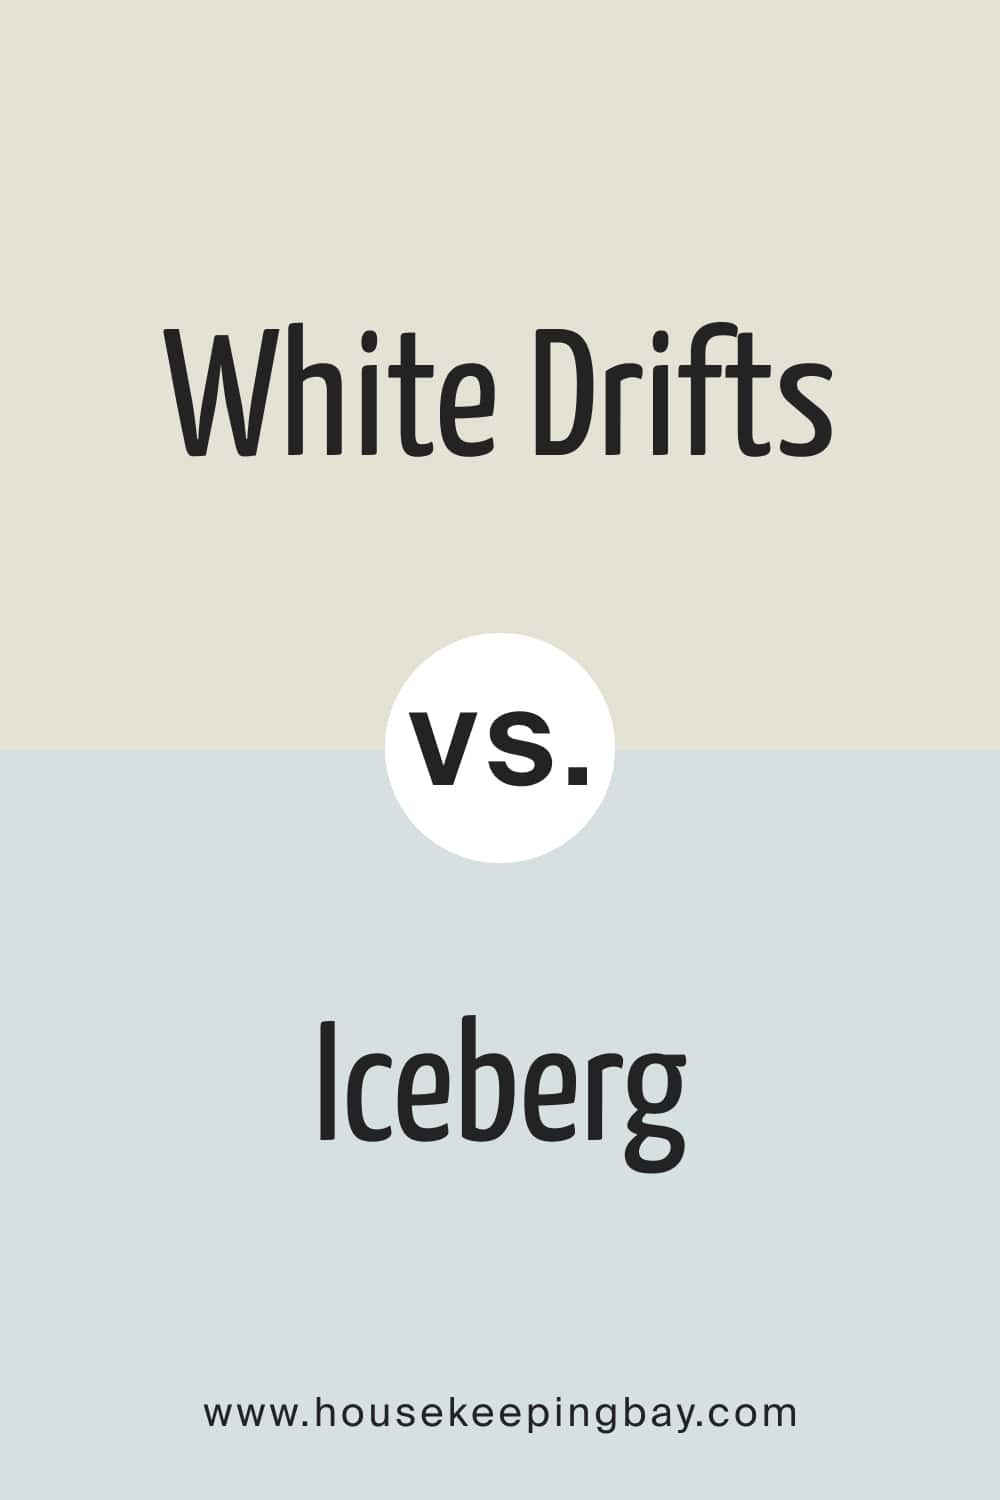 White Drifts vs Iceberg